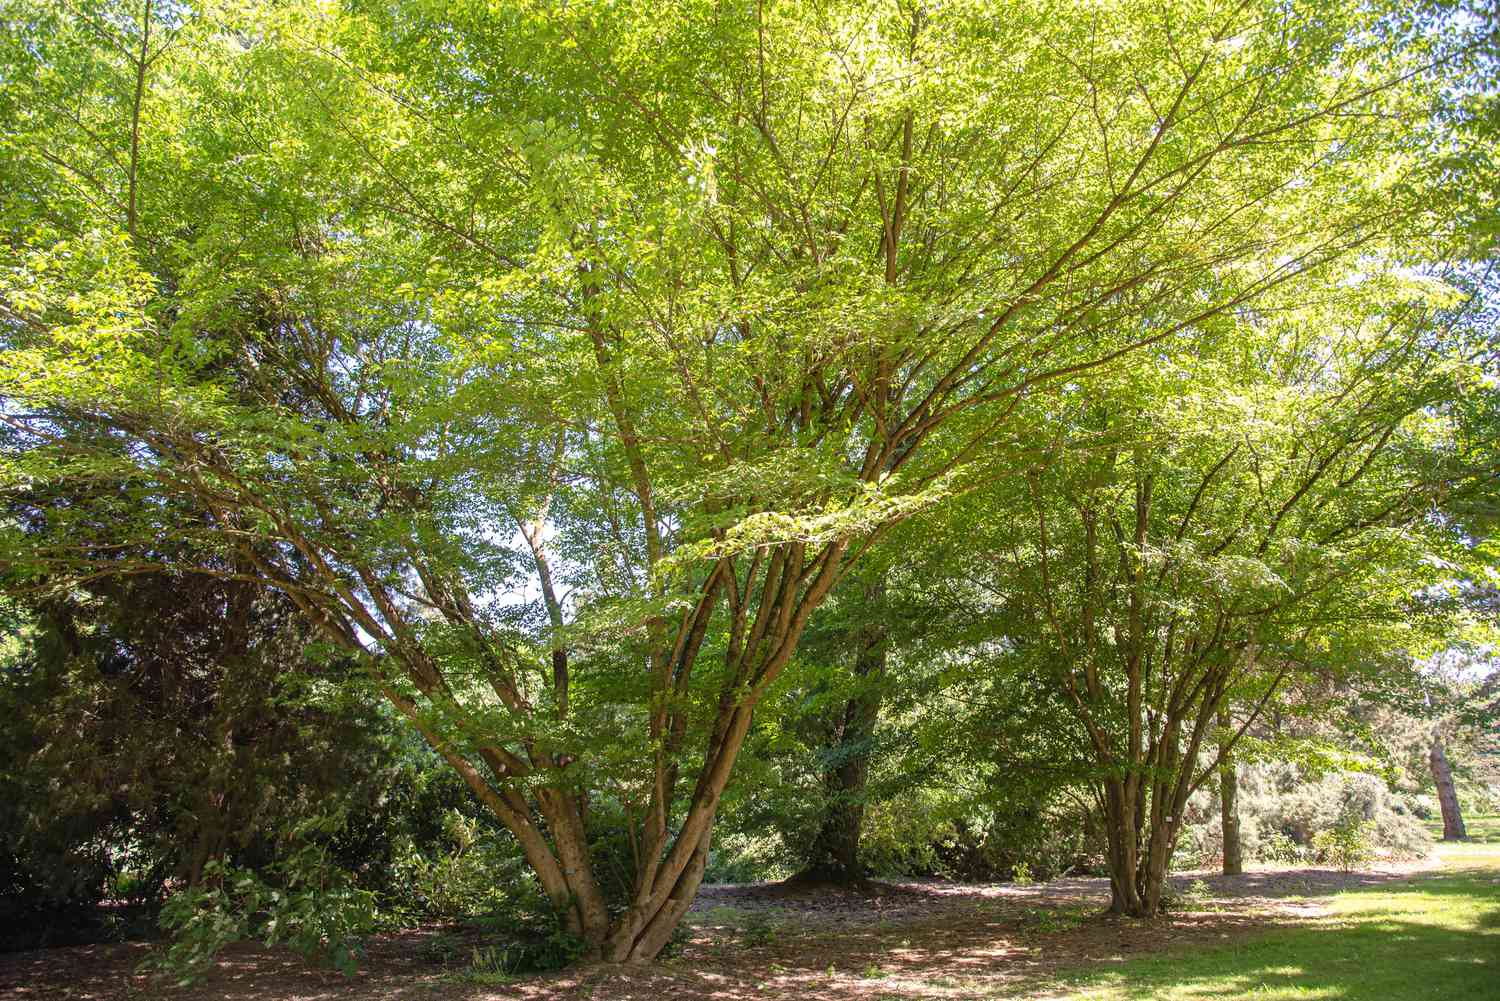 Rankenblatt-Ahornbaum mit mehreren Stämmen und leuchtend grünen Blättern an ausladenden Ästen